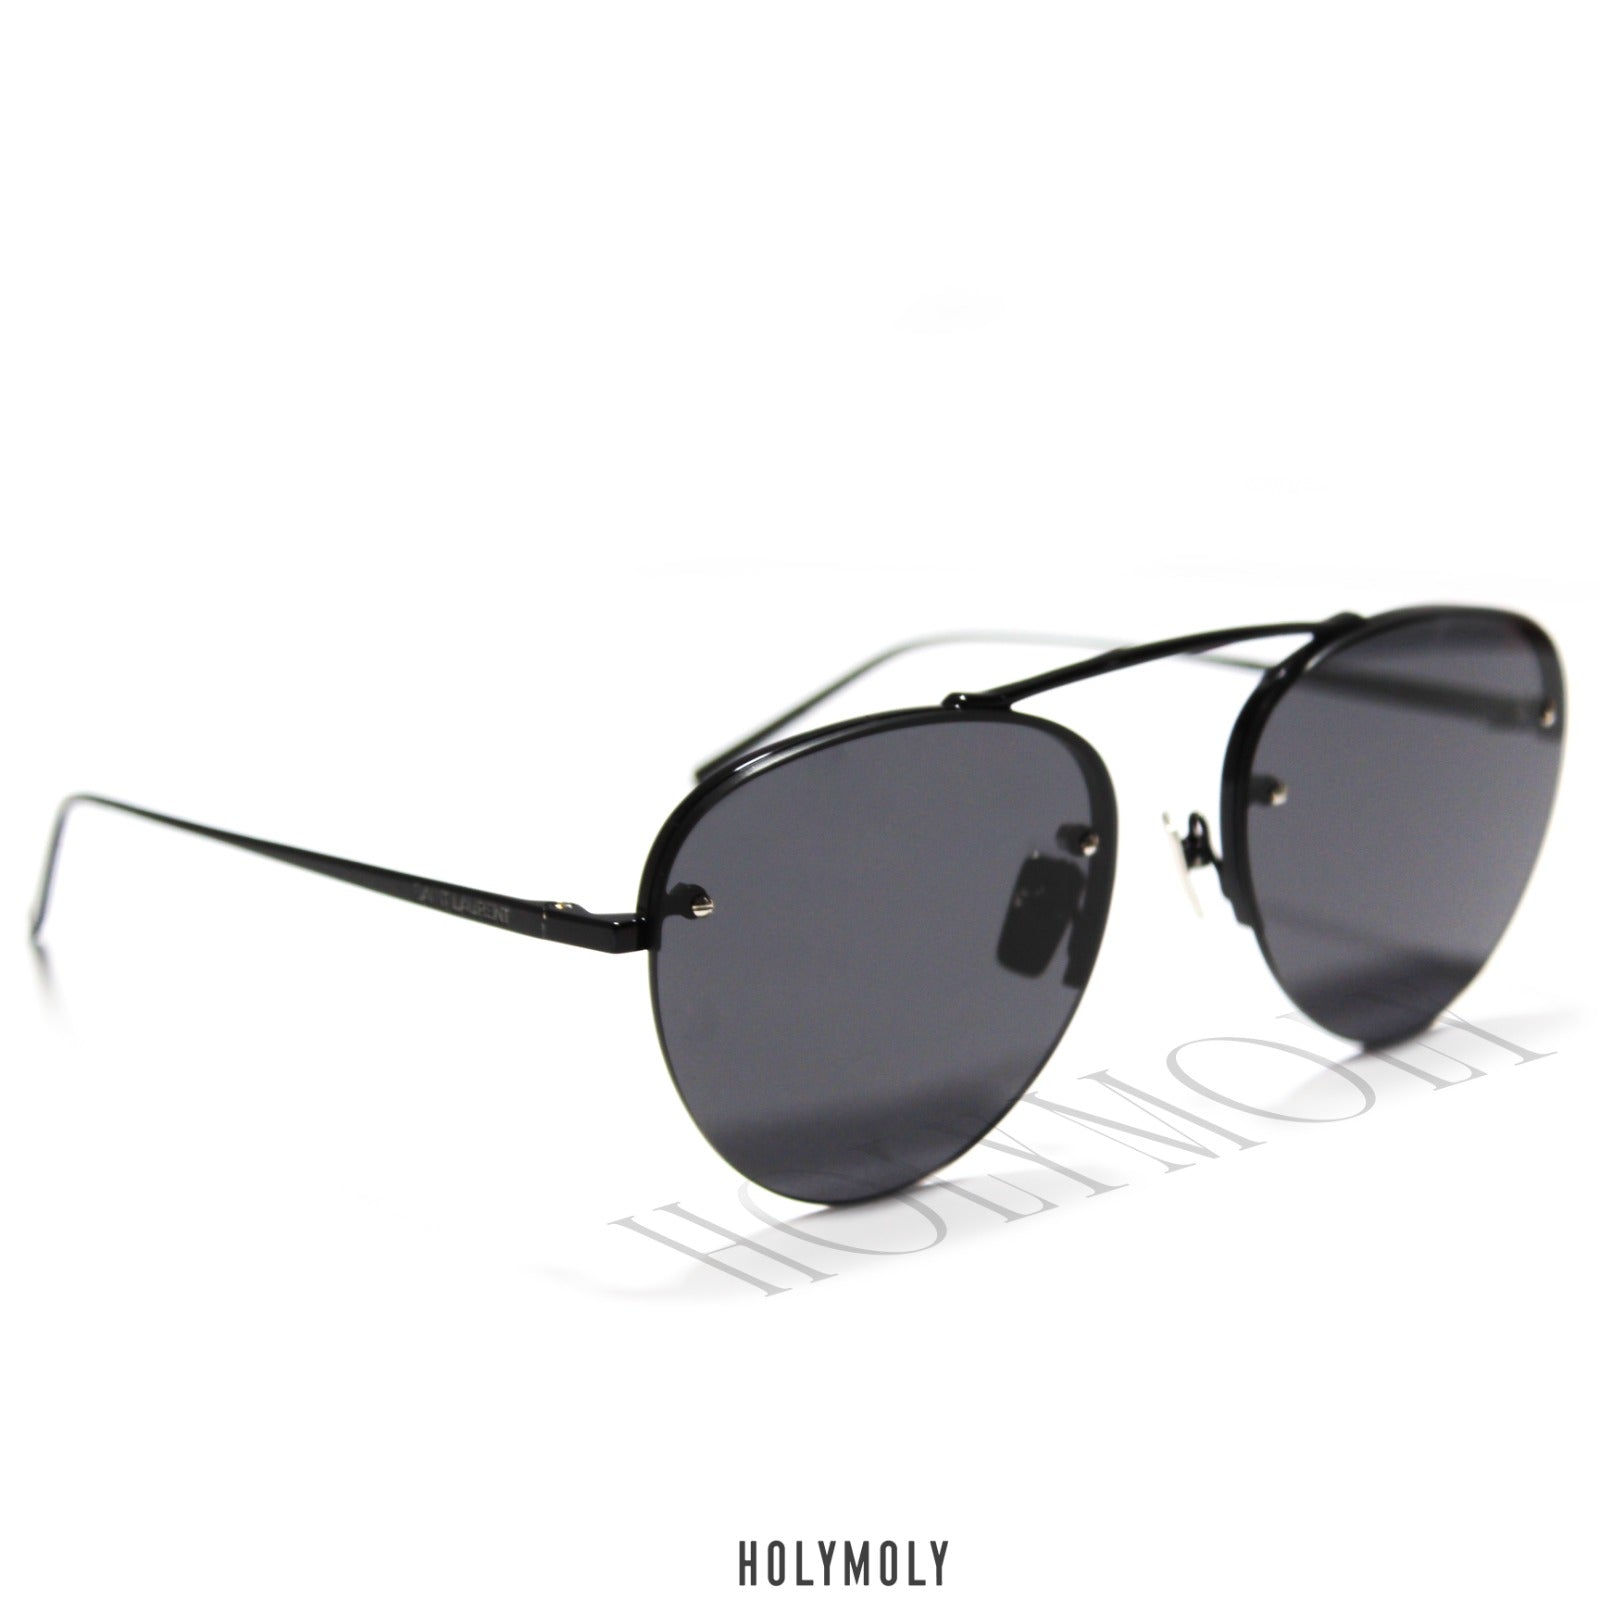 YSL SL575 aviator sunglasses